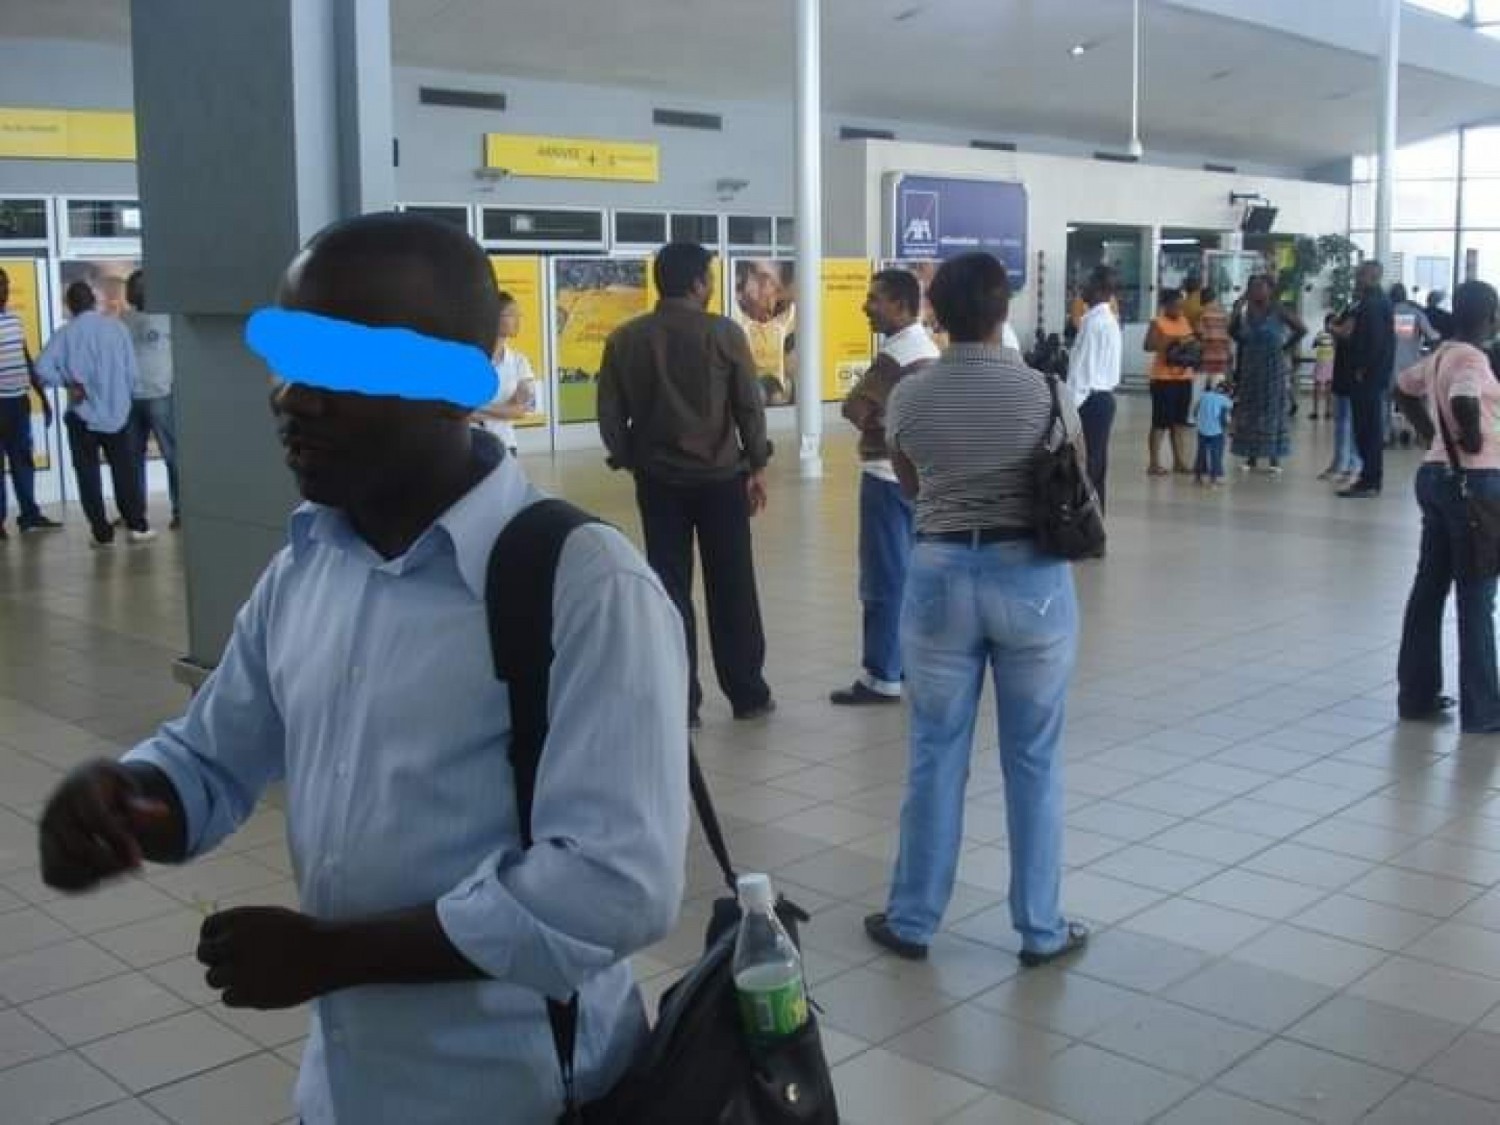 Côte d'Ivoire : Après avoir passé les fêtes de fin d'année au Pays, elle décède à l'aéroport alors qu'elle se rendait en France